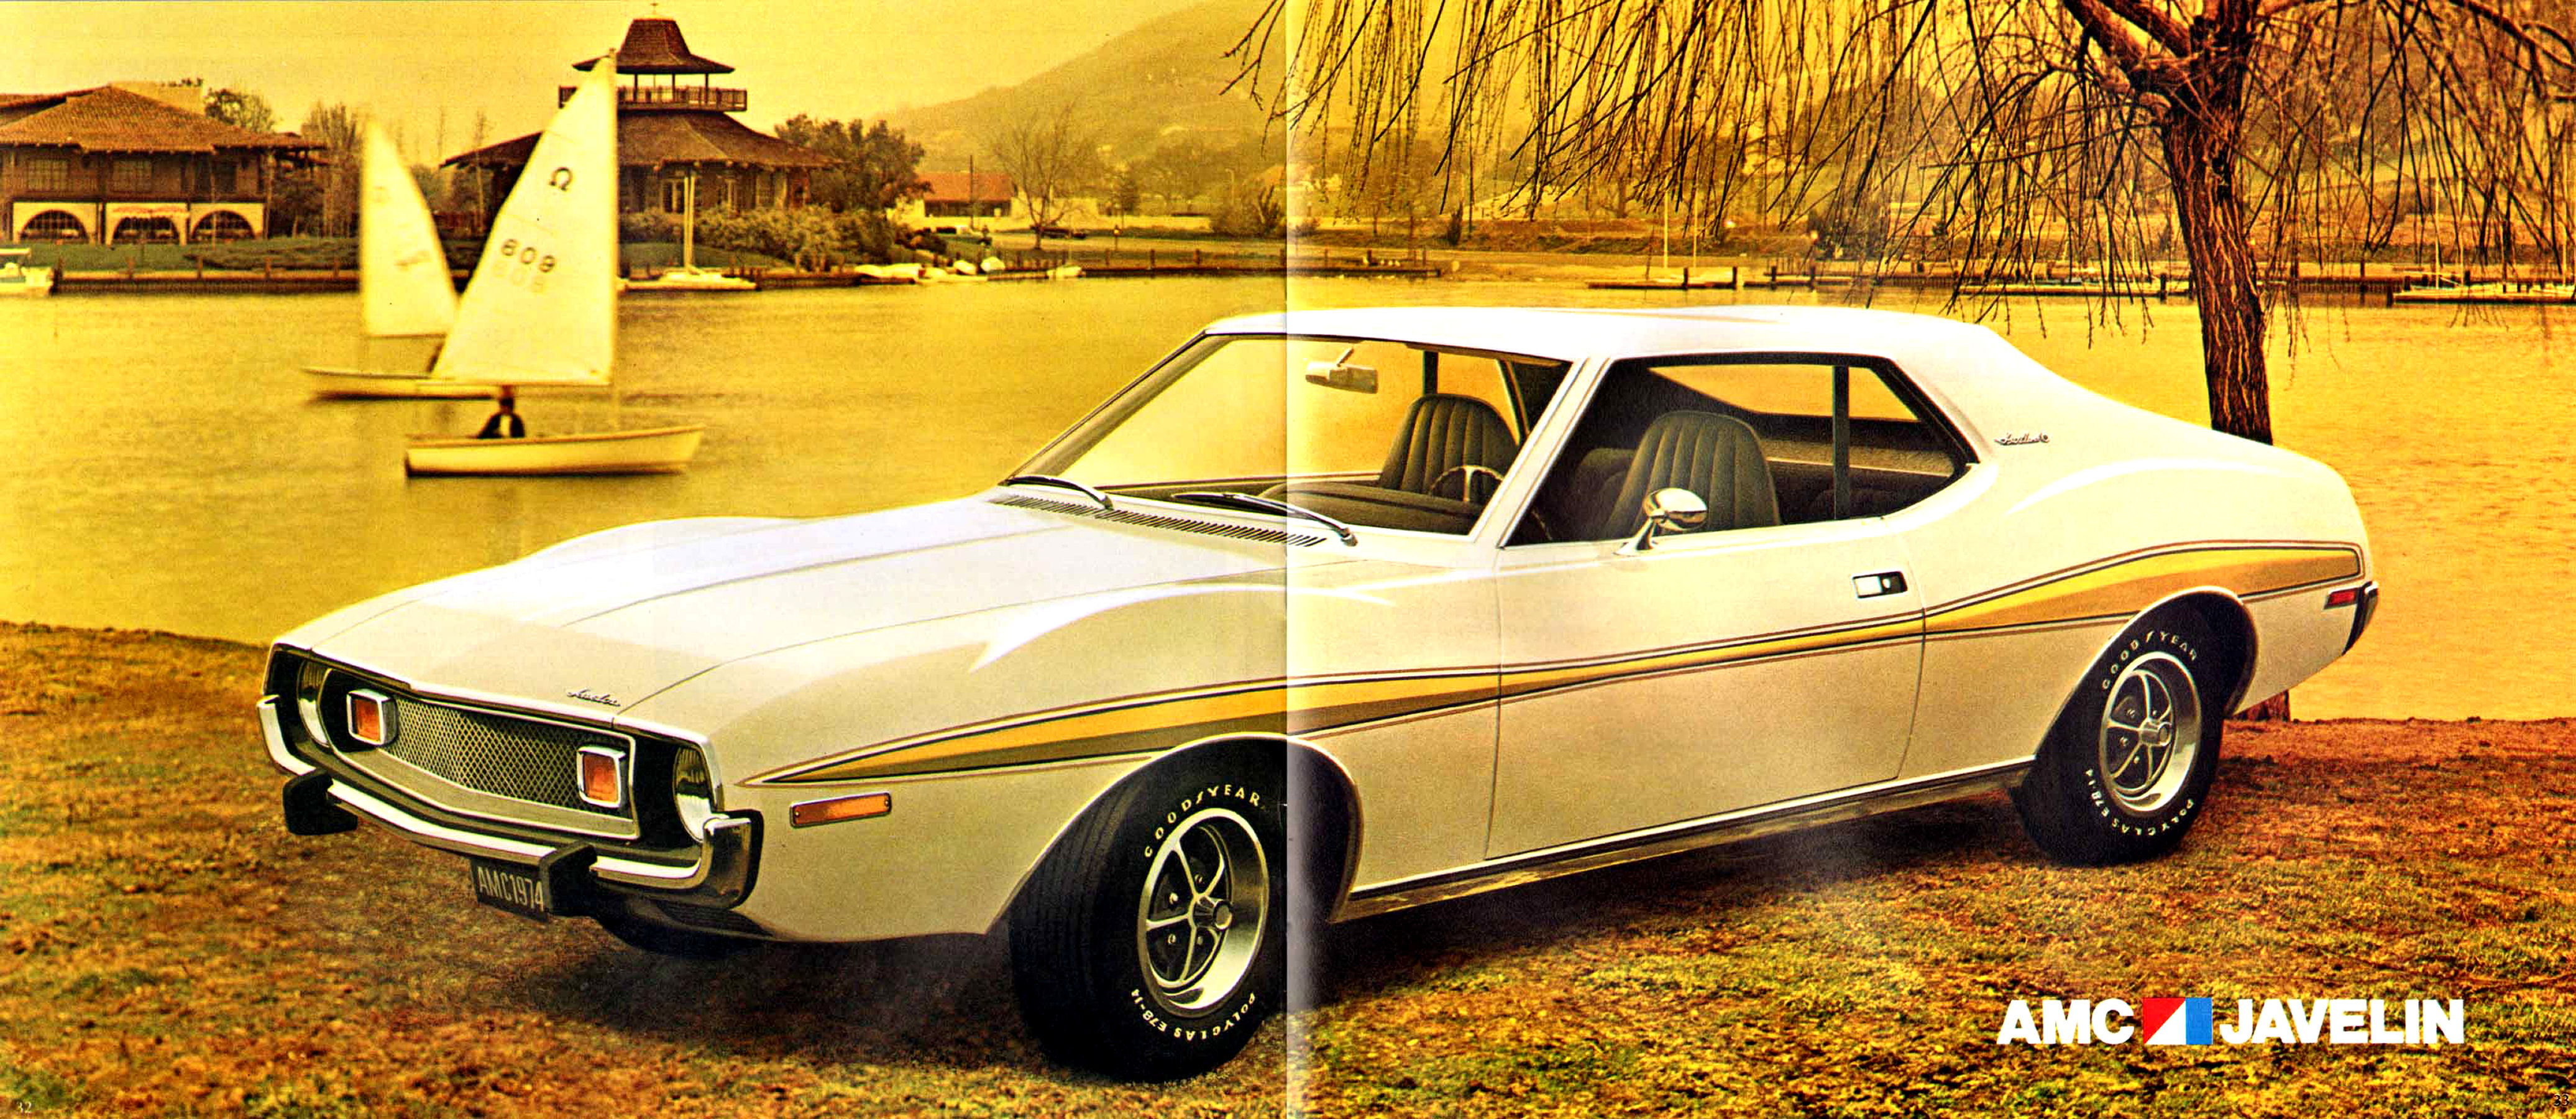 1974 AMC Full Line Prestige-32-33